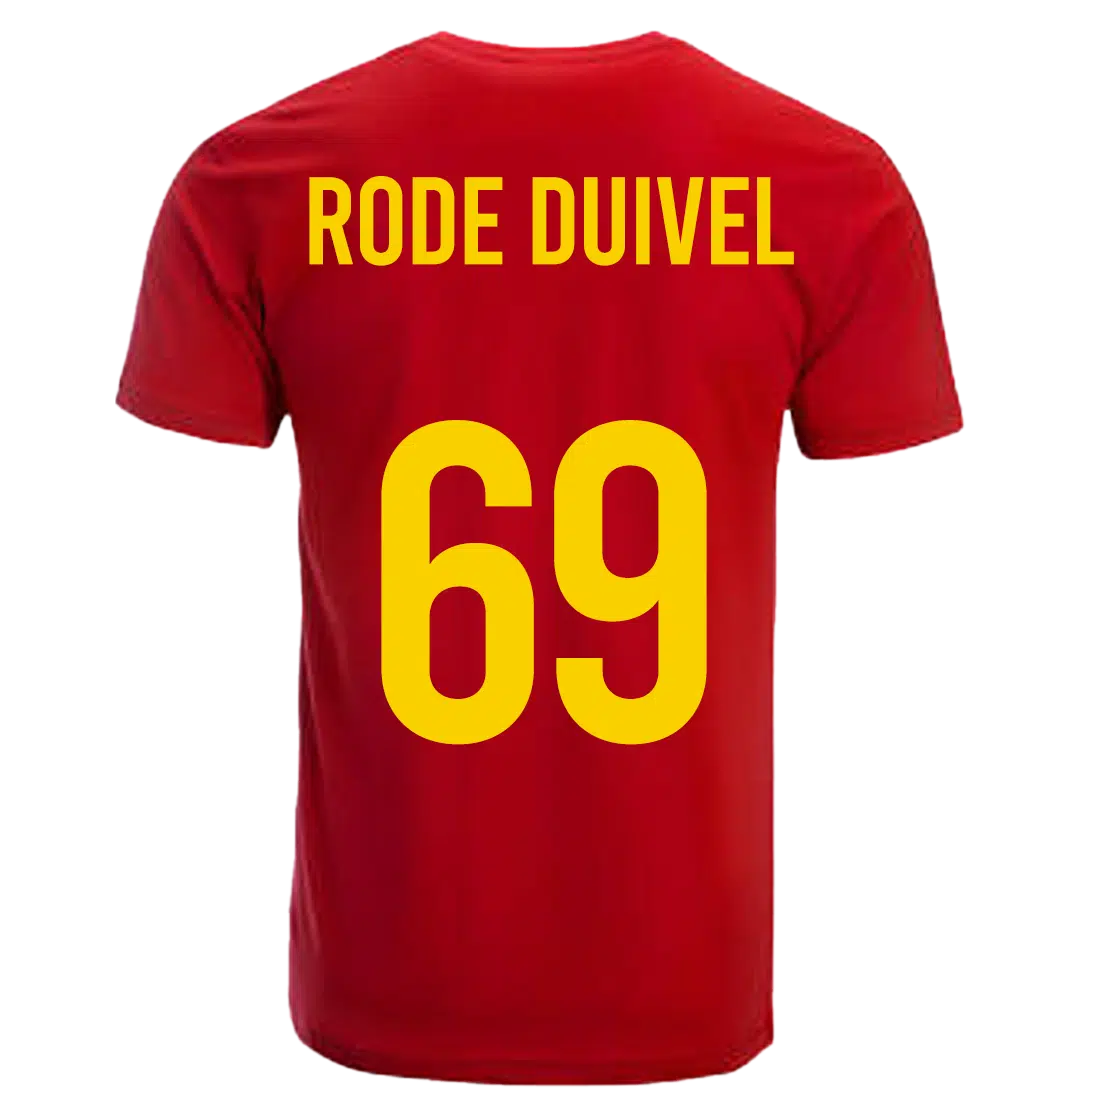 Rode duivel Belgie shirt achterkant